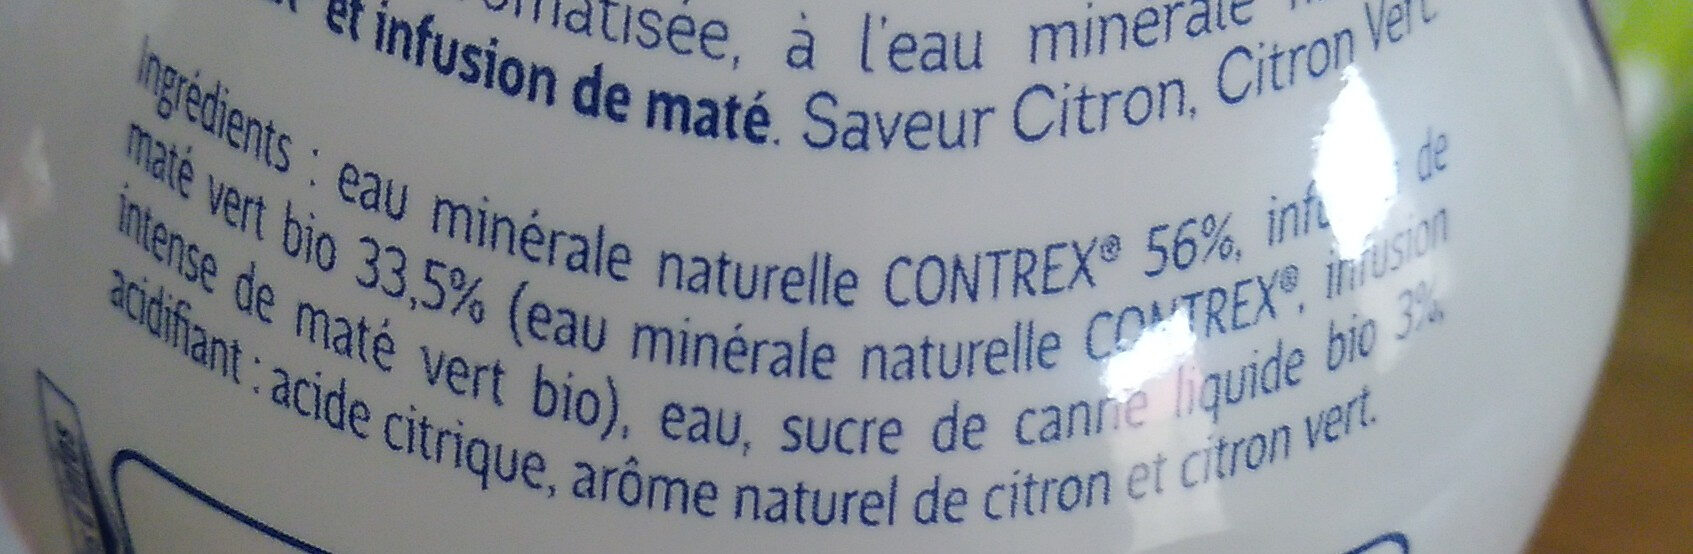 CONTREX Green eau aromatisée BIO Maté saveur Citron Citron Vert 75cl - Ingredients - fr